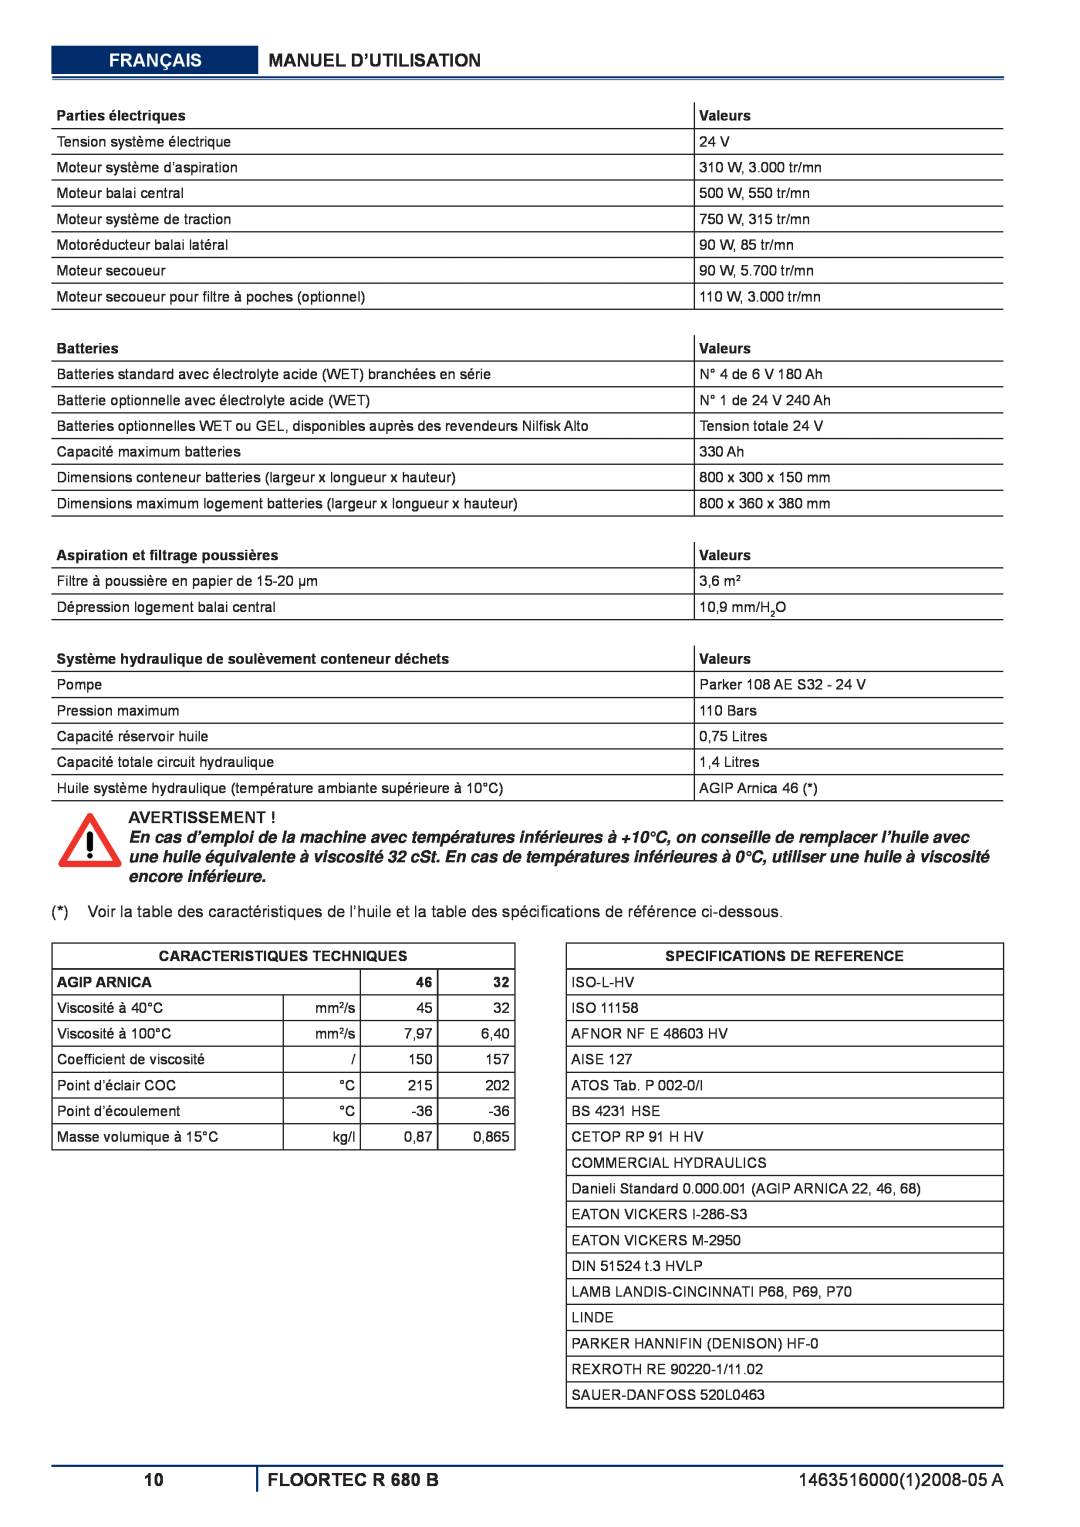 Nilfisk-ALTO manuel dutilisation Français, Manuel D’Utilisation, FLOORTEC R 680 B, Avertissement, Parties électriques 